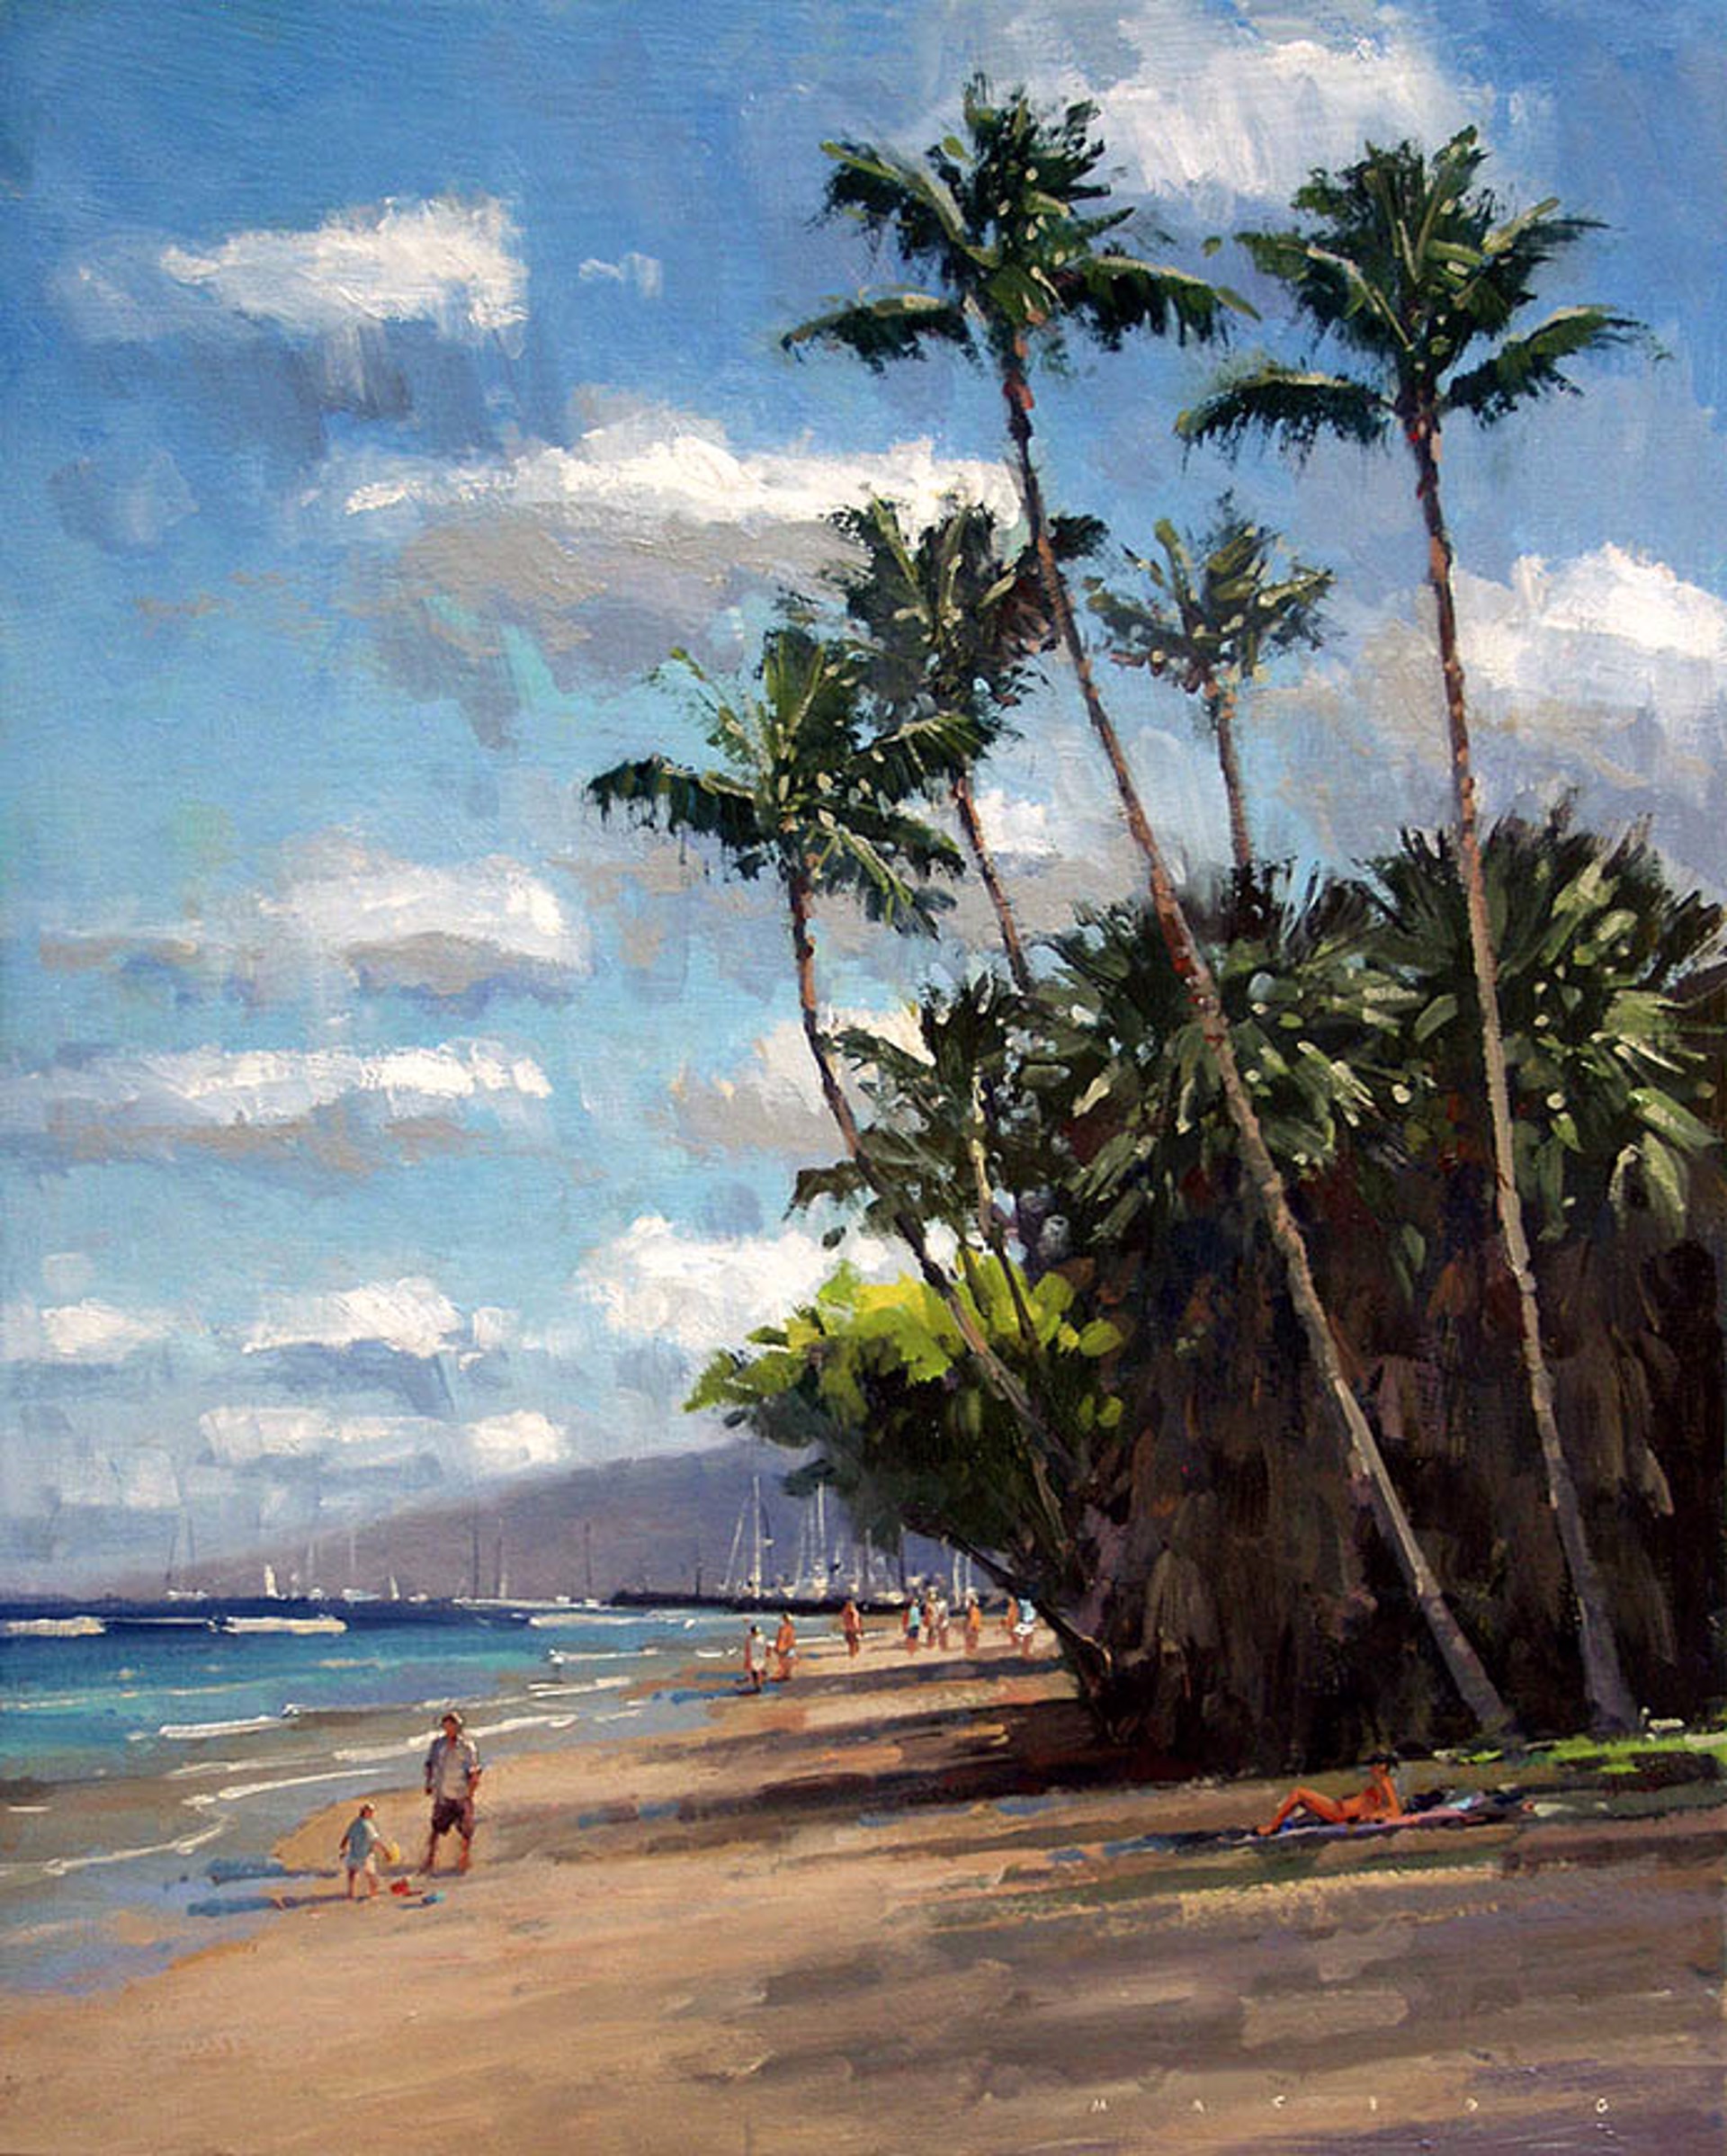 Maui Family Beach Day by Ronaldo Macedo